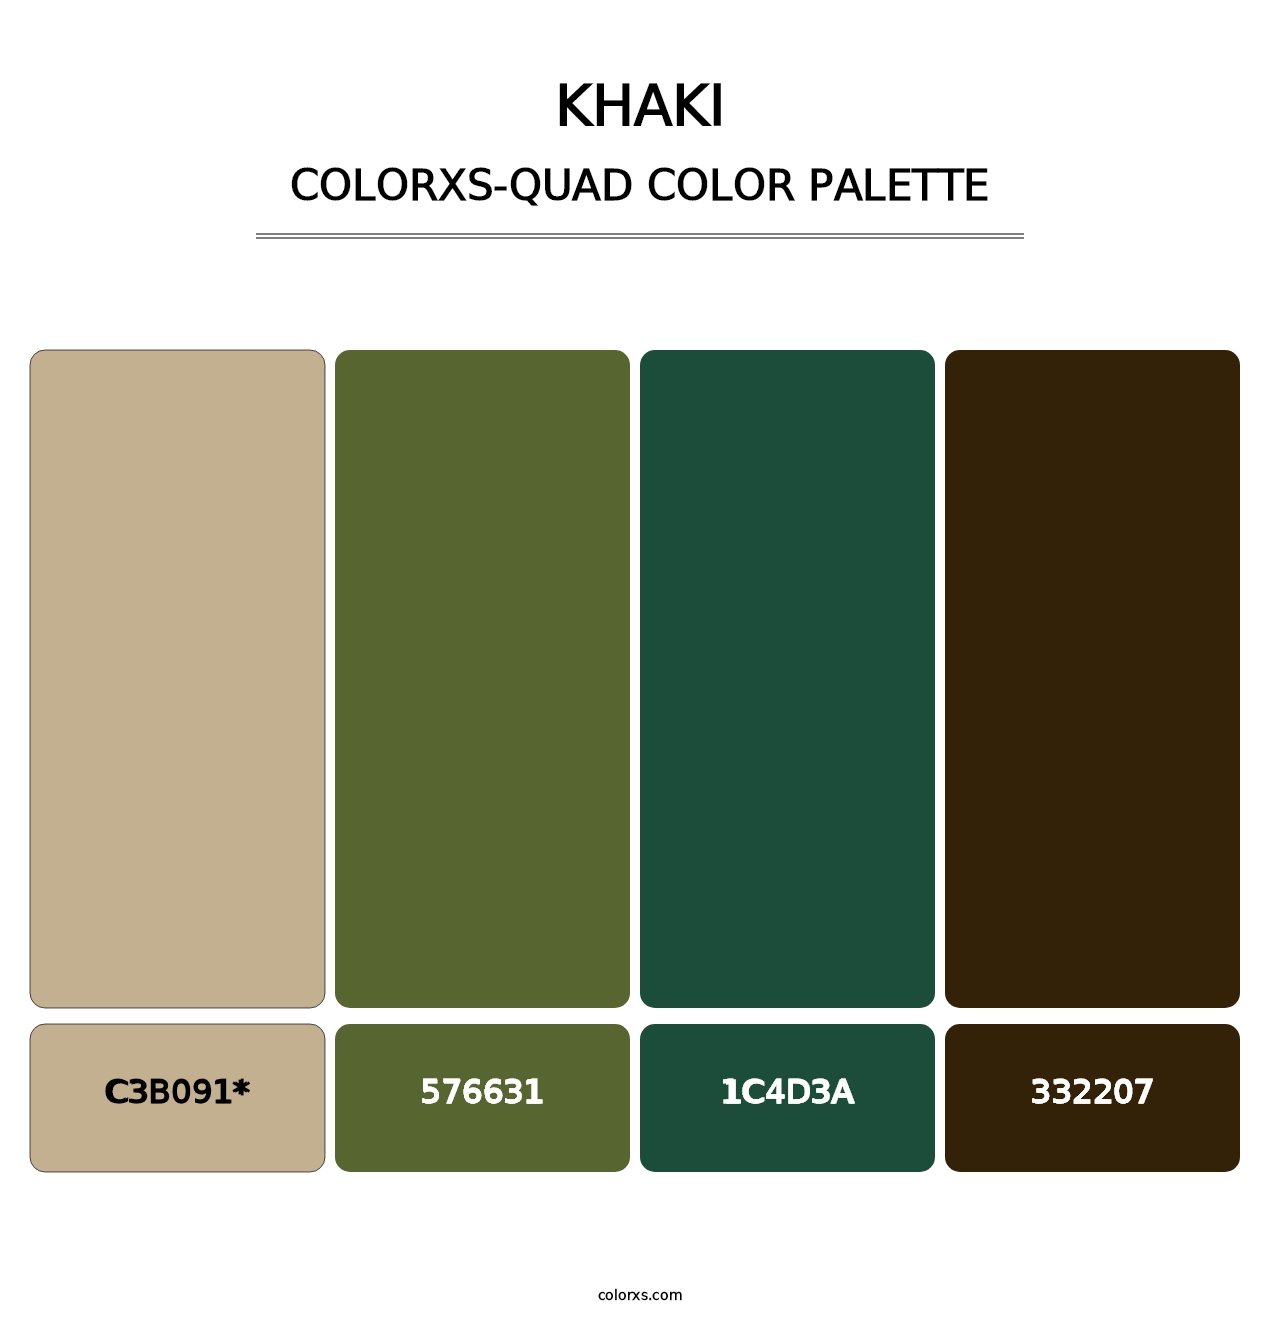 Khaki - Colorxs Quad Palette